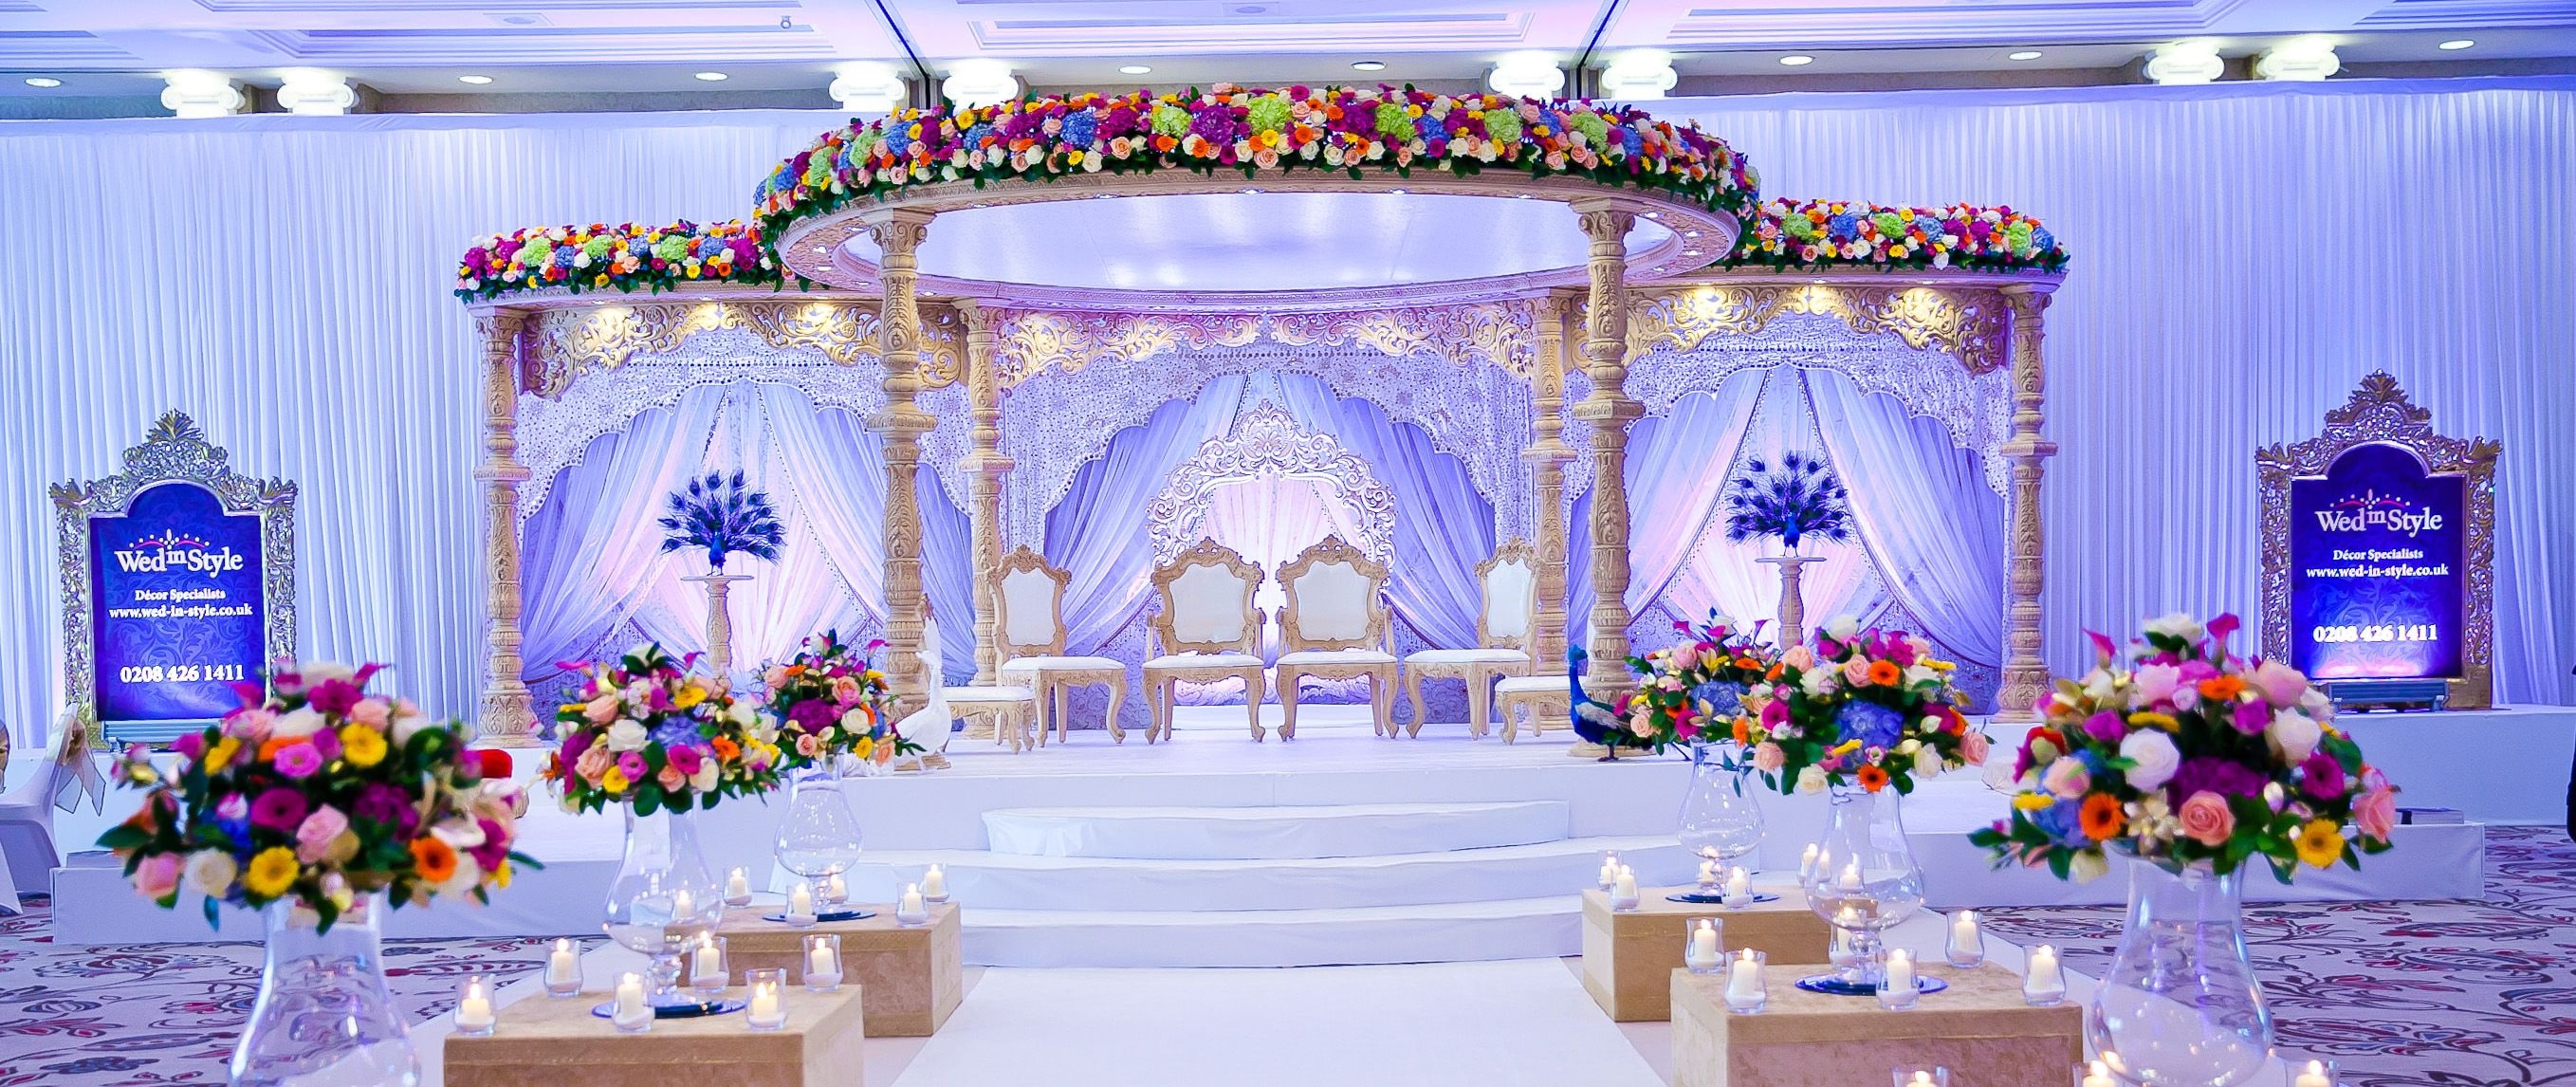 Wedding Venue in delhi